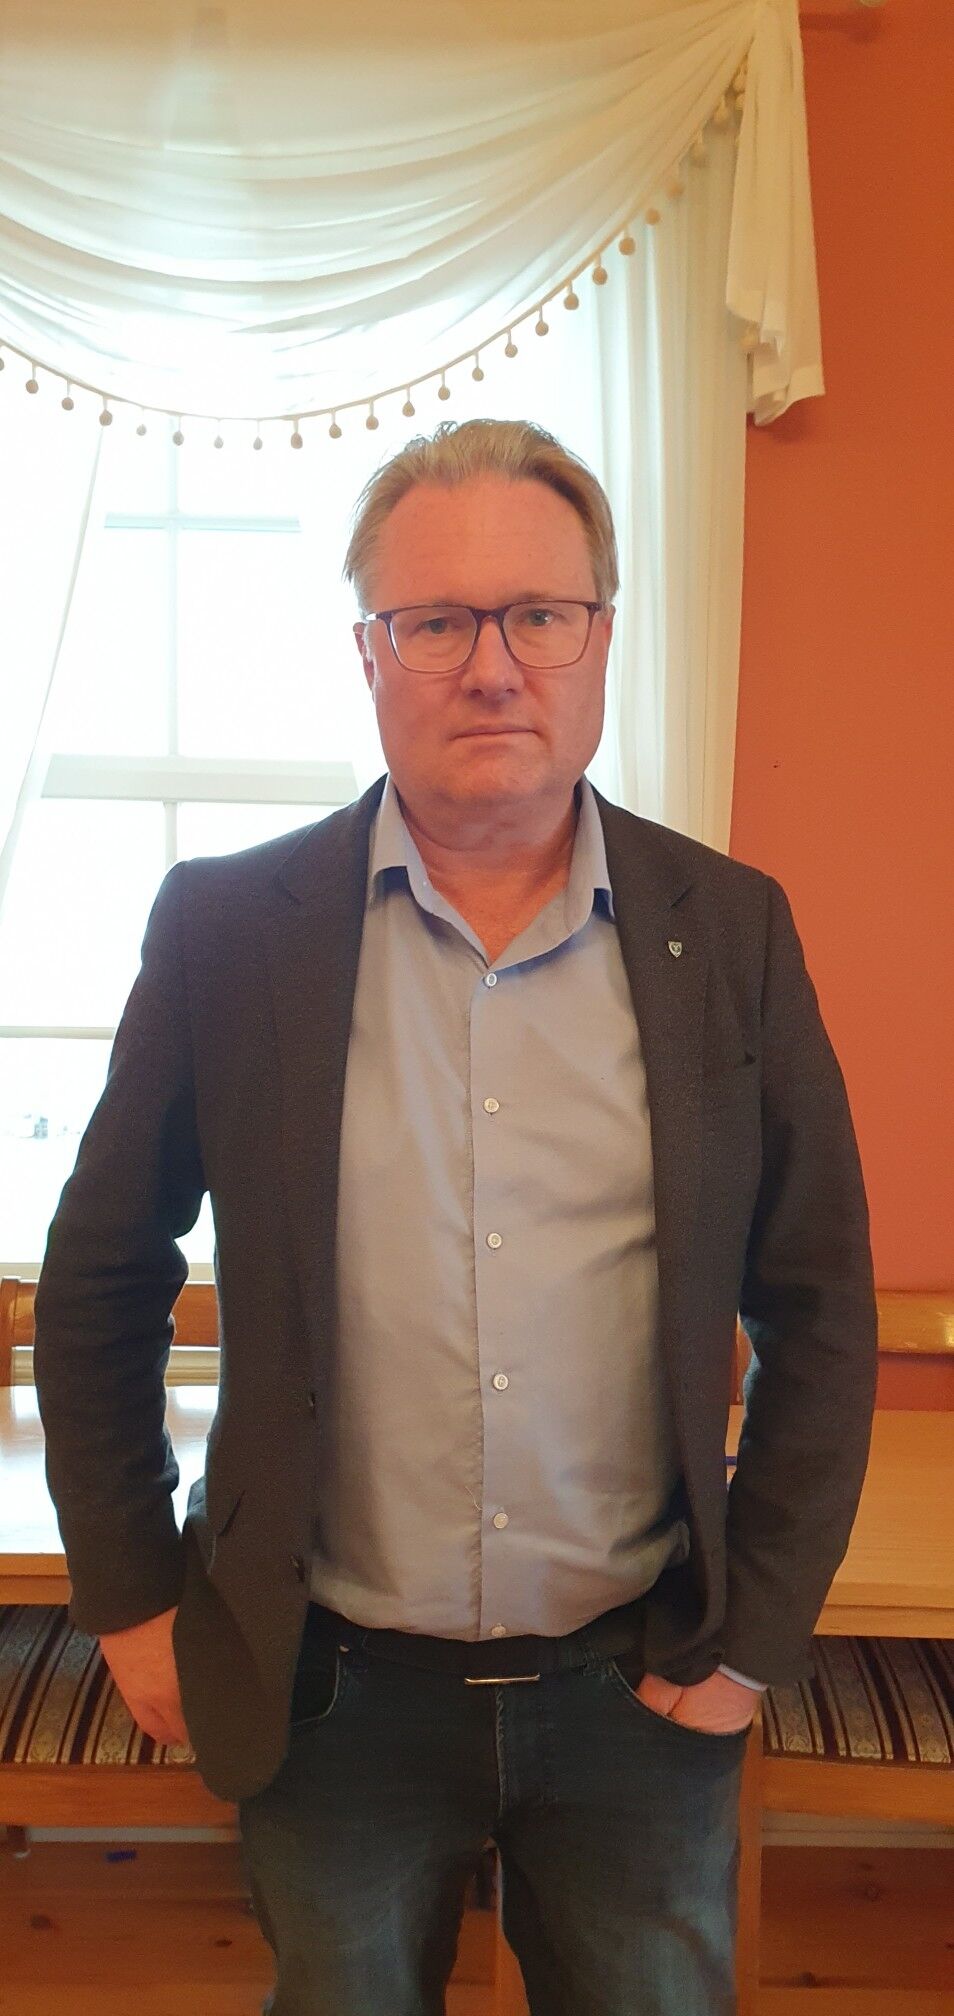 Ordfører i Lillesand Kommune, Einar Holmer-Hoven.
 Foto: Privat